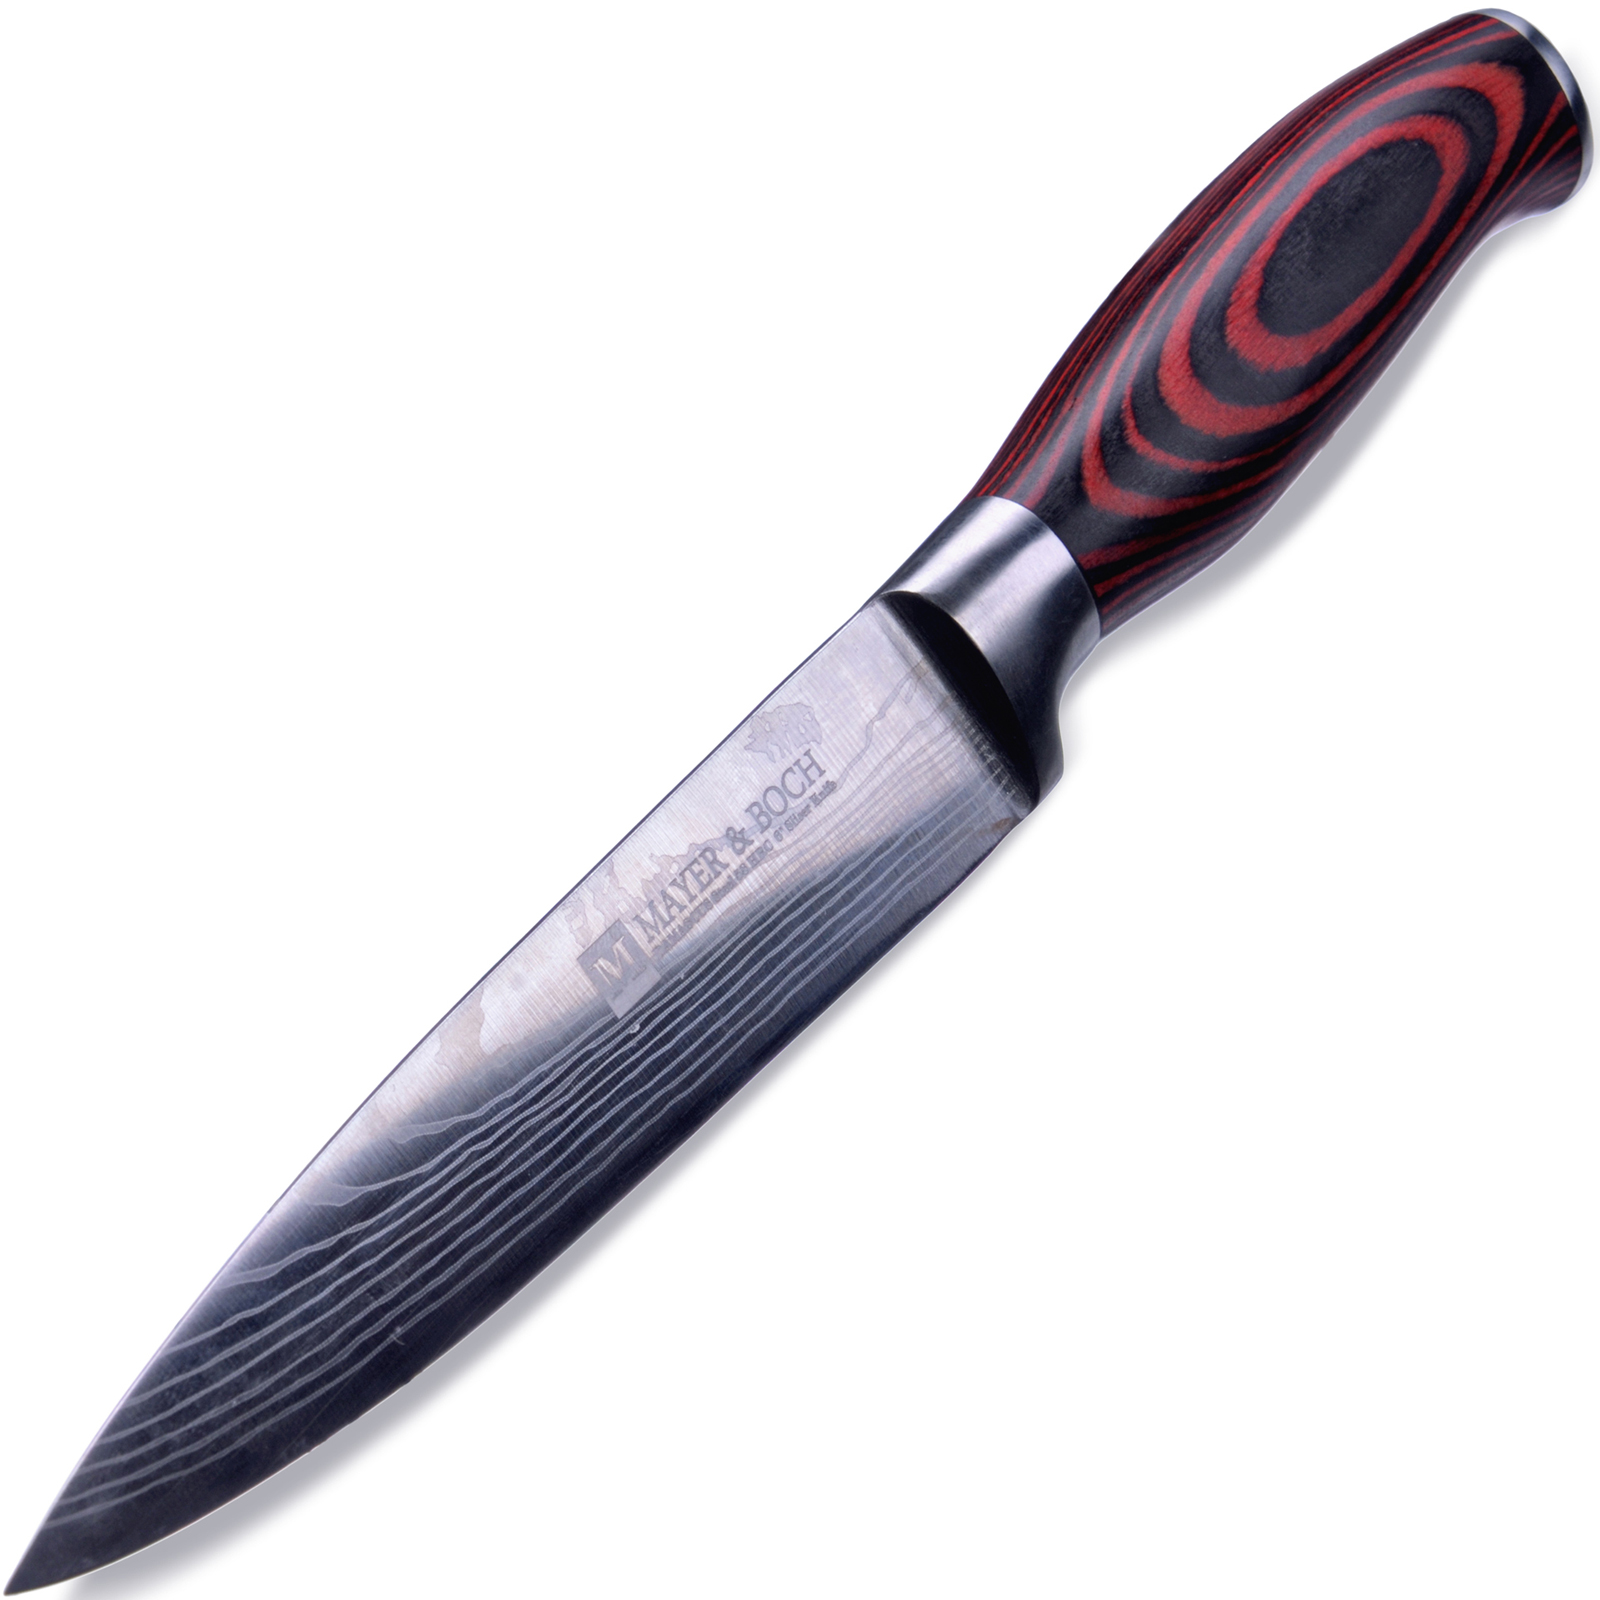 фото Нож разделочный Mayer & Boch Domascus, цвет: красный, черный, серебристый, длина лезвия 15,5 см